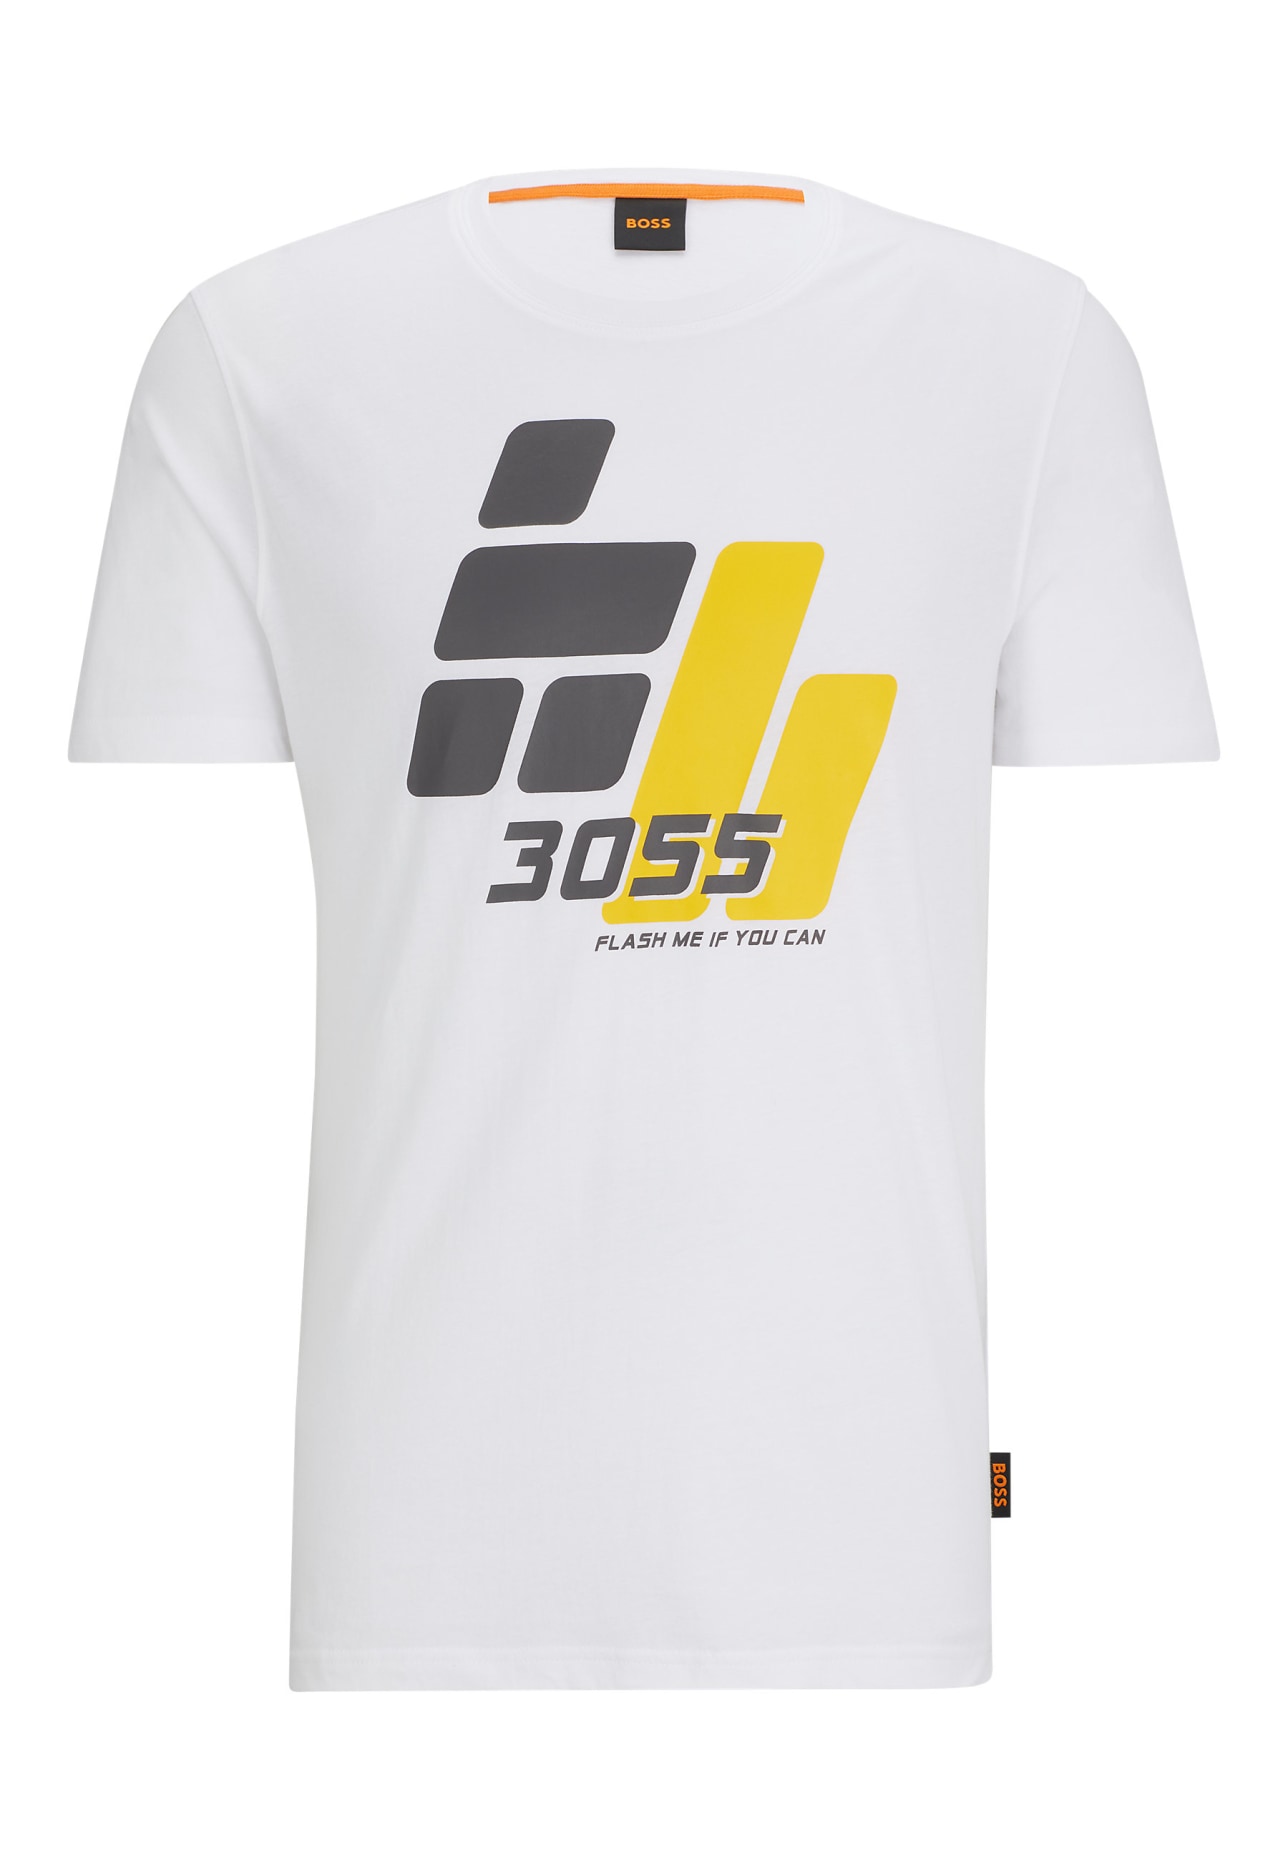 BOSS T-Shirt TEE3055 Regular Fit, Farbe: WEISS (Bild 1)